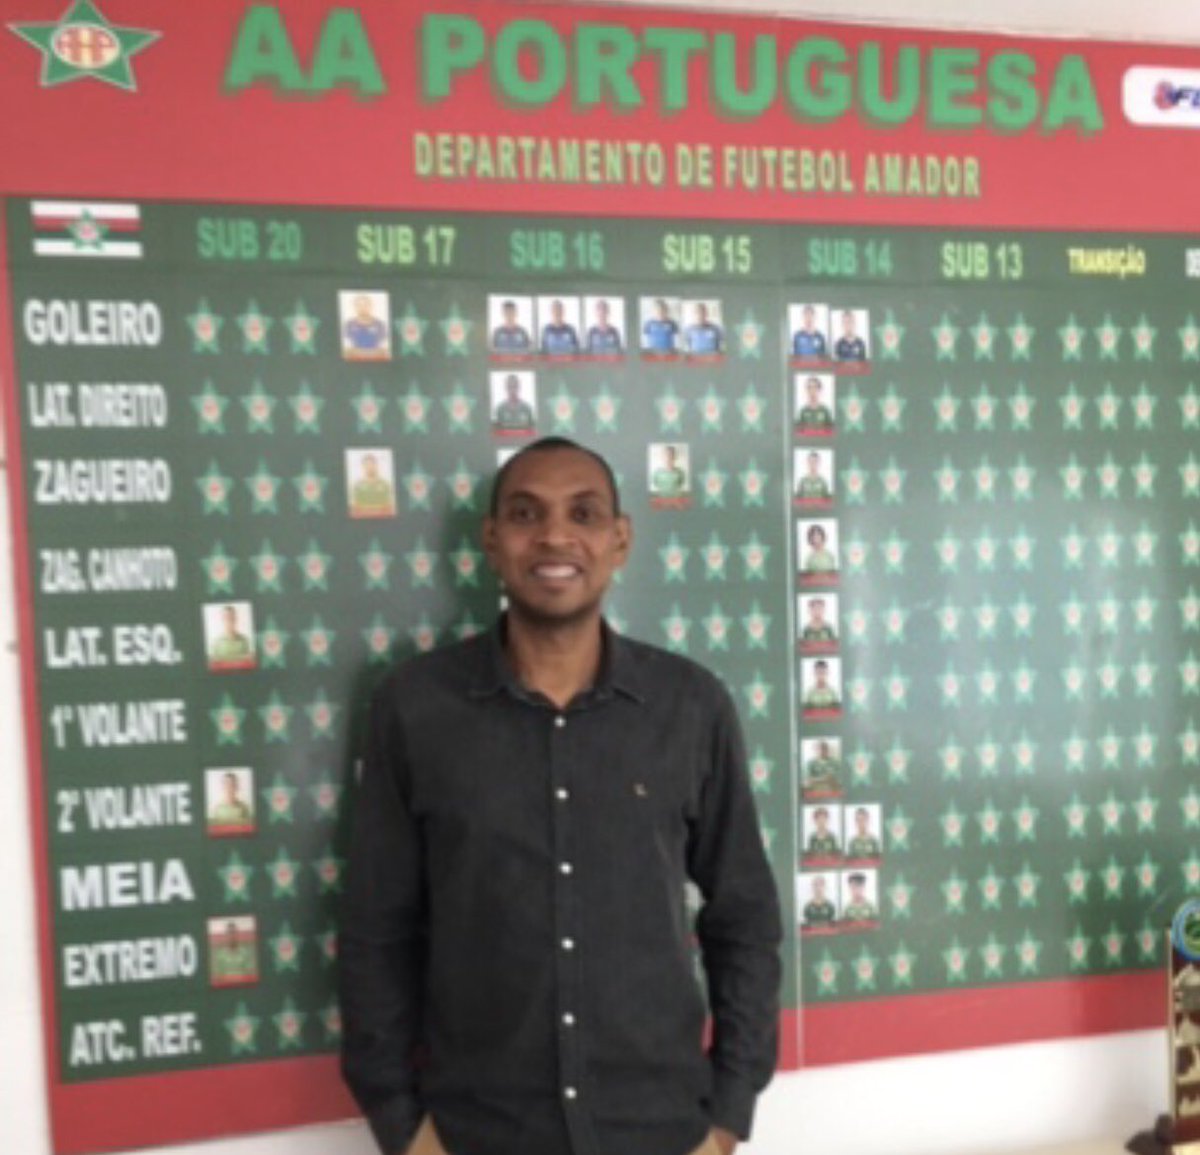 Feliz por estar aqui. @portuguesarjofc 
#GestãoEsportiva
#Gestão
#Futebol